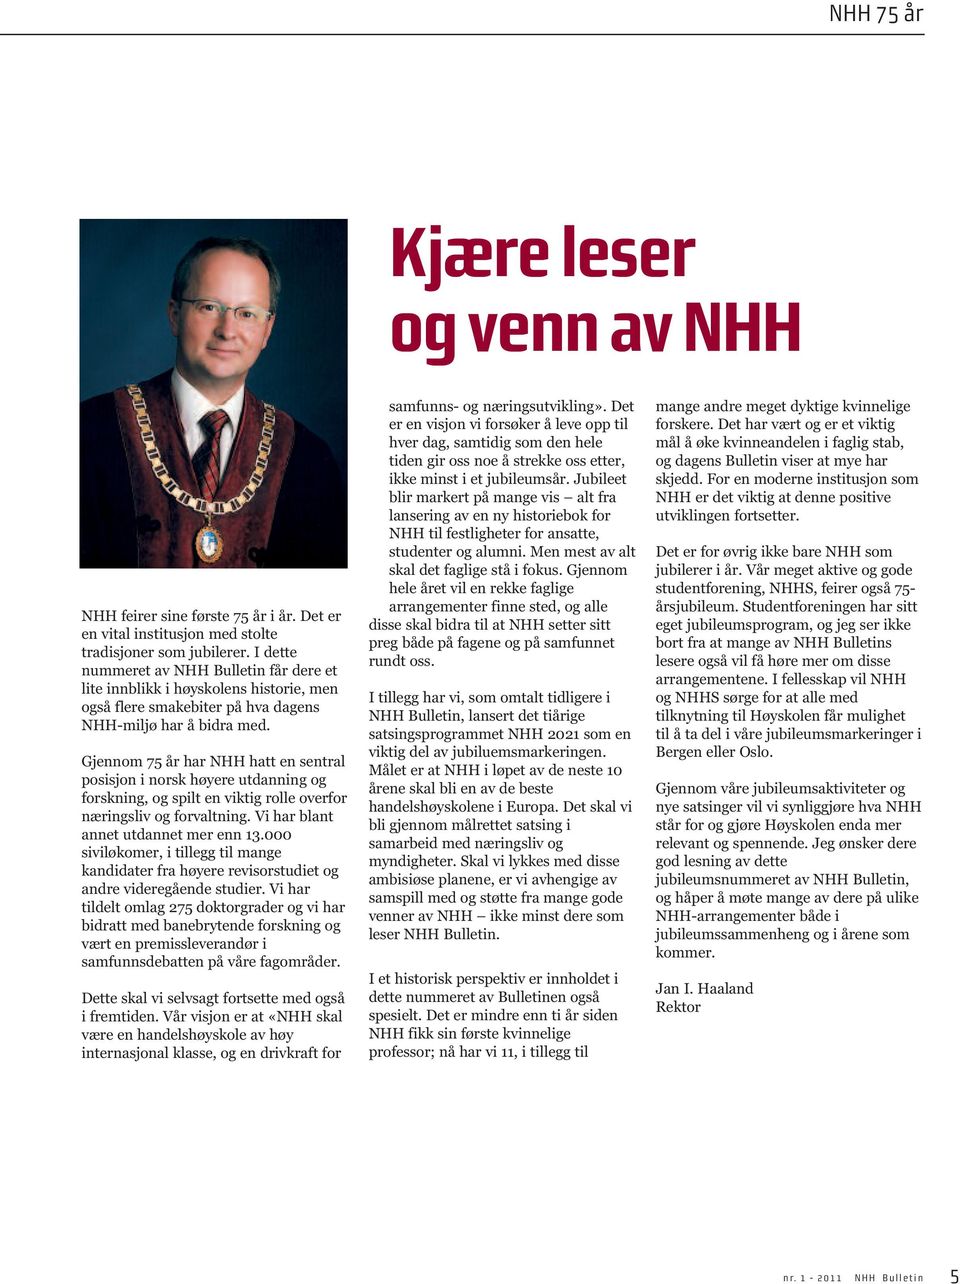 Gjennom 75 år har NHH hatt en sentral posisjon i norsk høyere utdanning og forskning, og spilt en viktig rolle overfor næringsliv og forvaltning. Vi har blant annet utdannet mer enn 13.